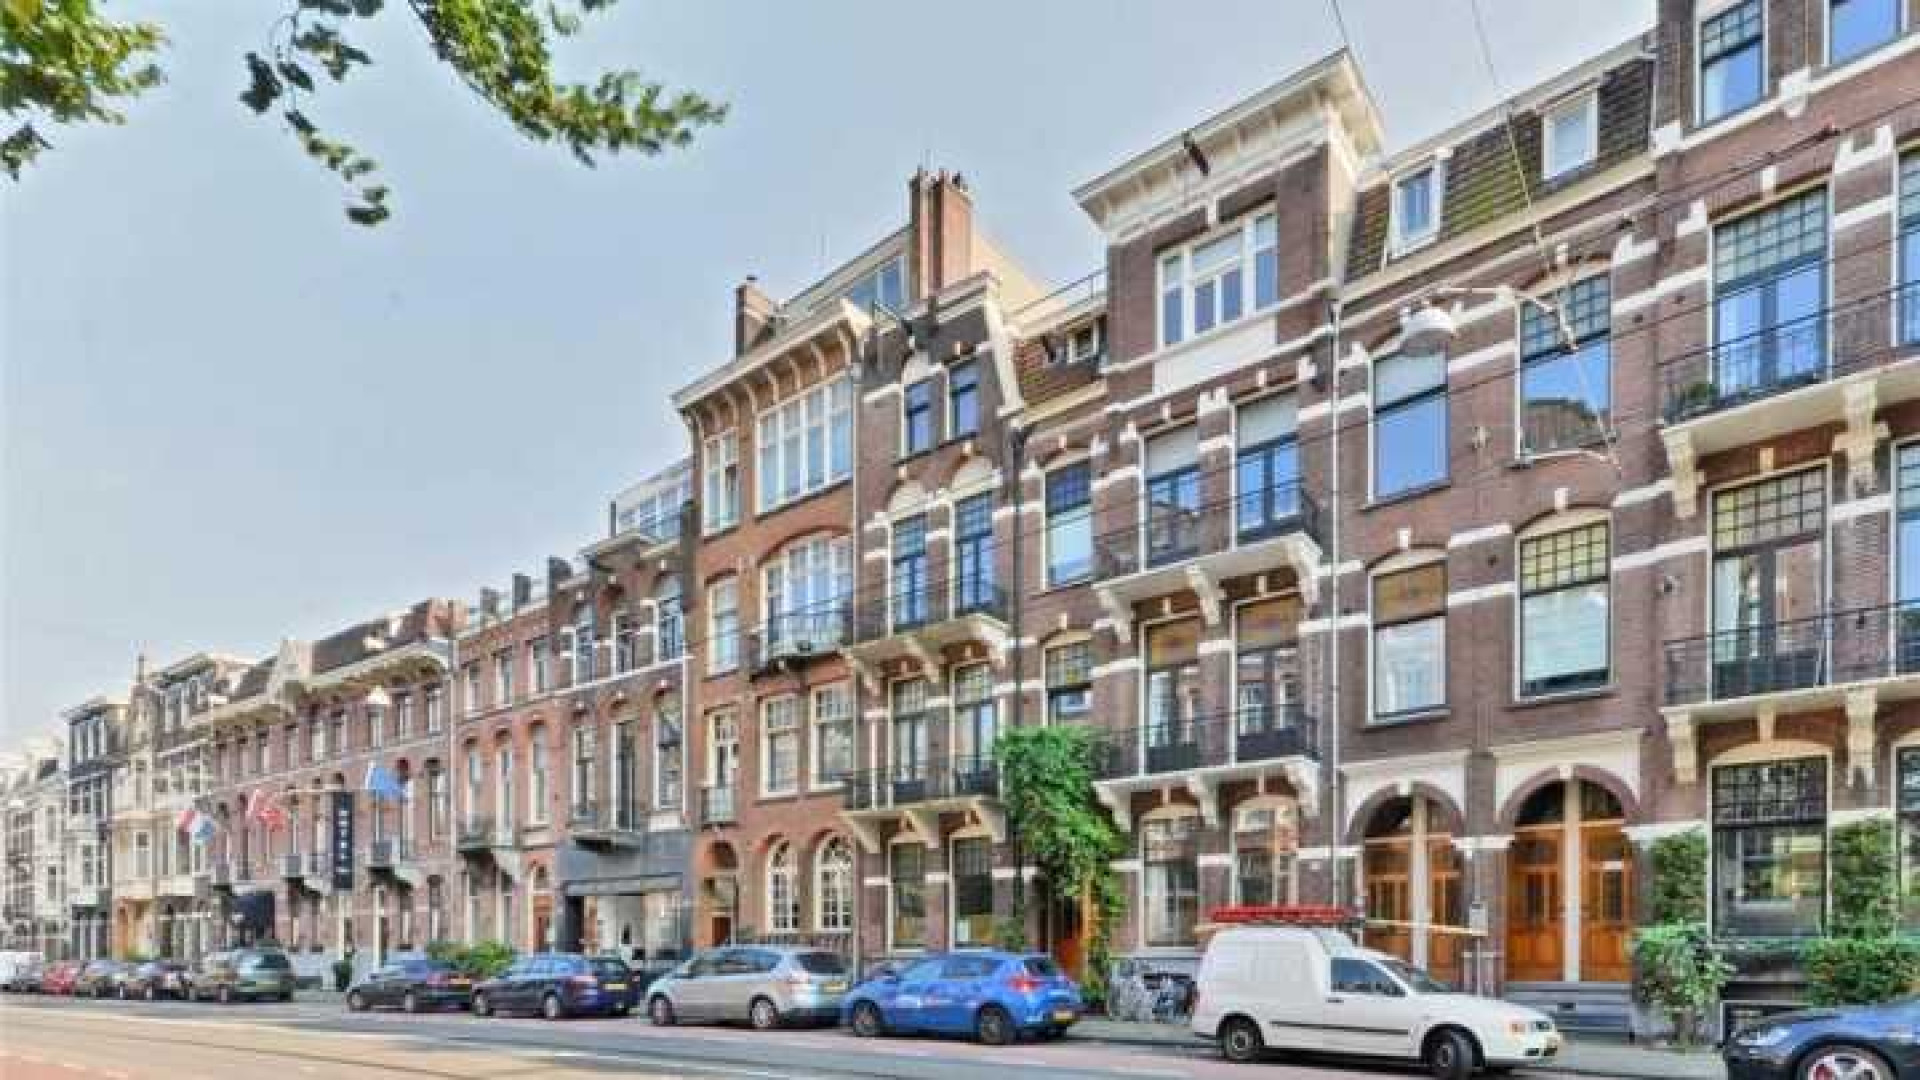 Daan Schuurmans en Bracha verkopen hun huis in Amsterdam Zuid. Zie foto's